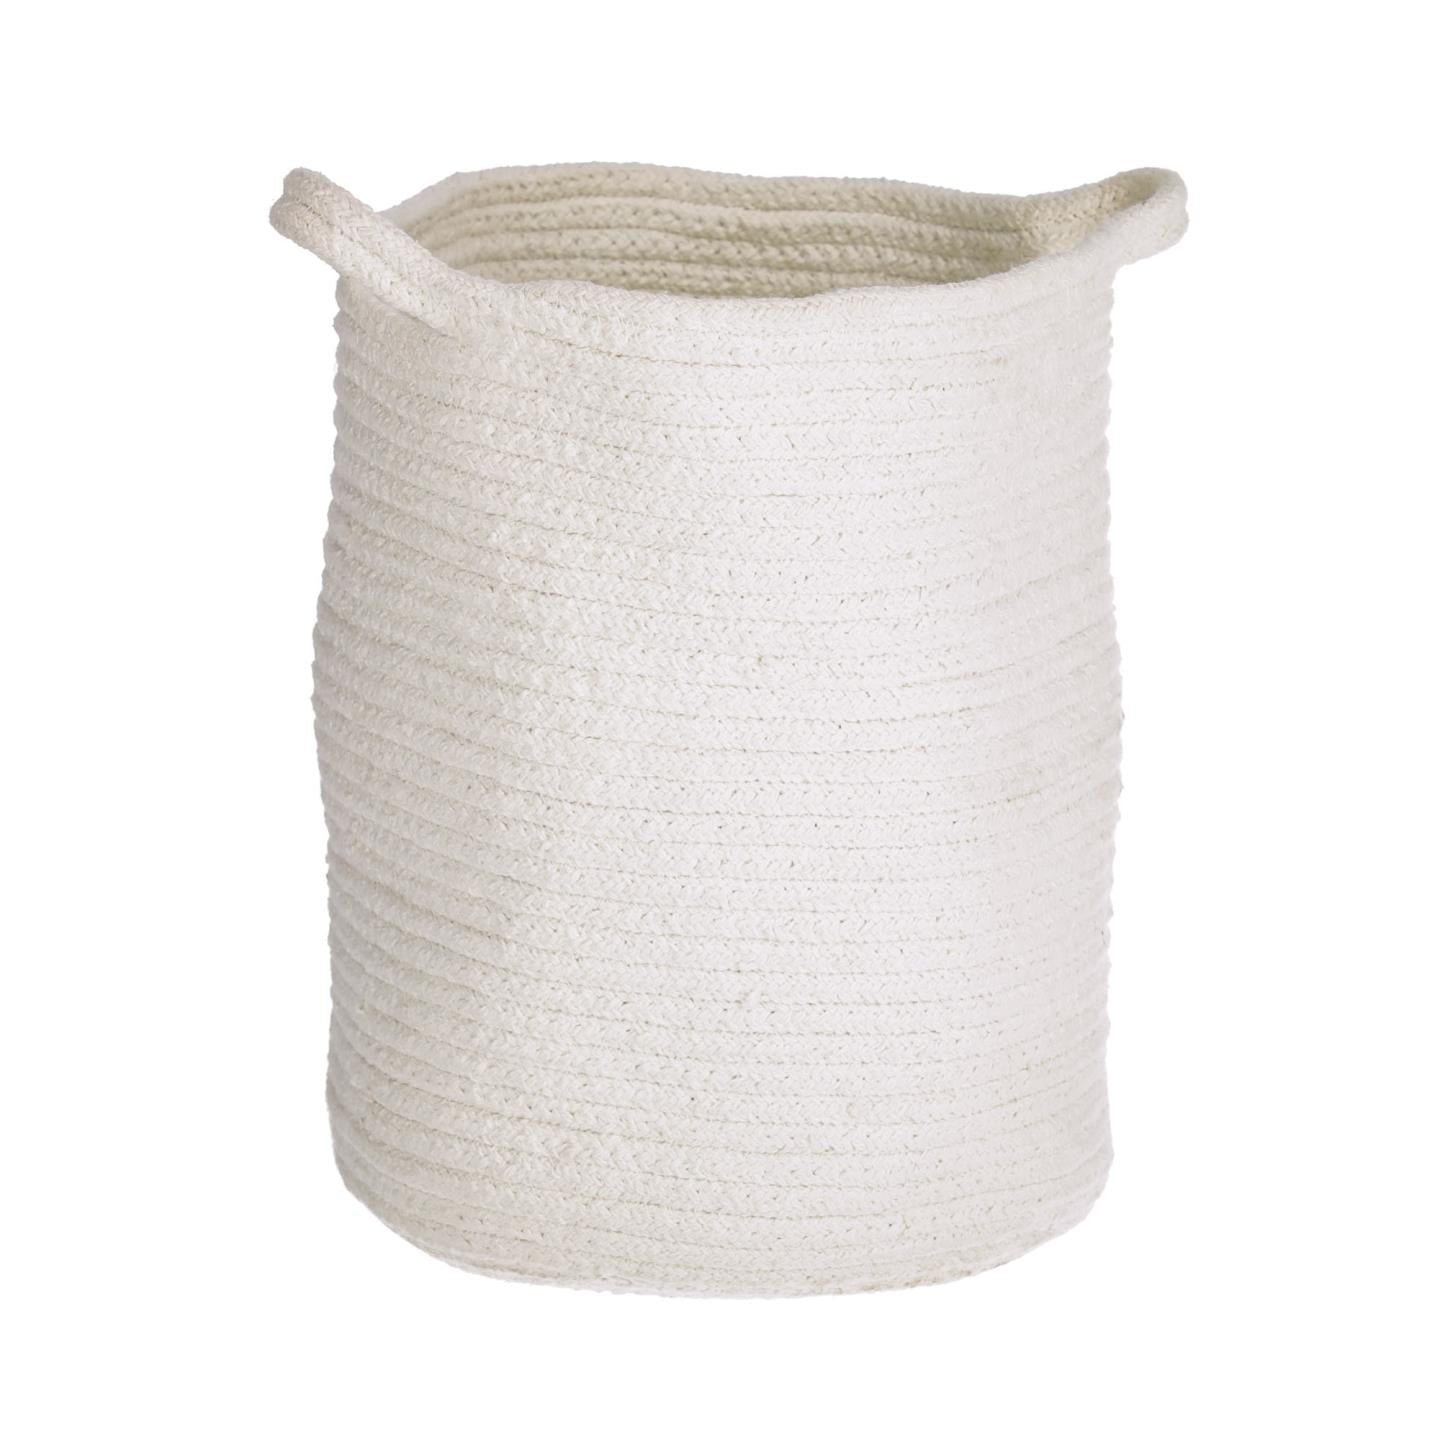 Abeni 100% cotton basket in white 30 cm